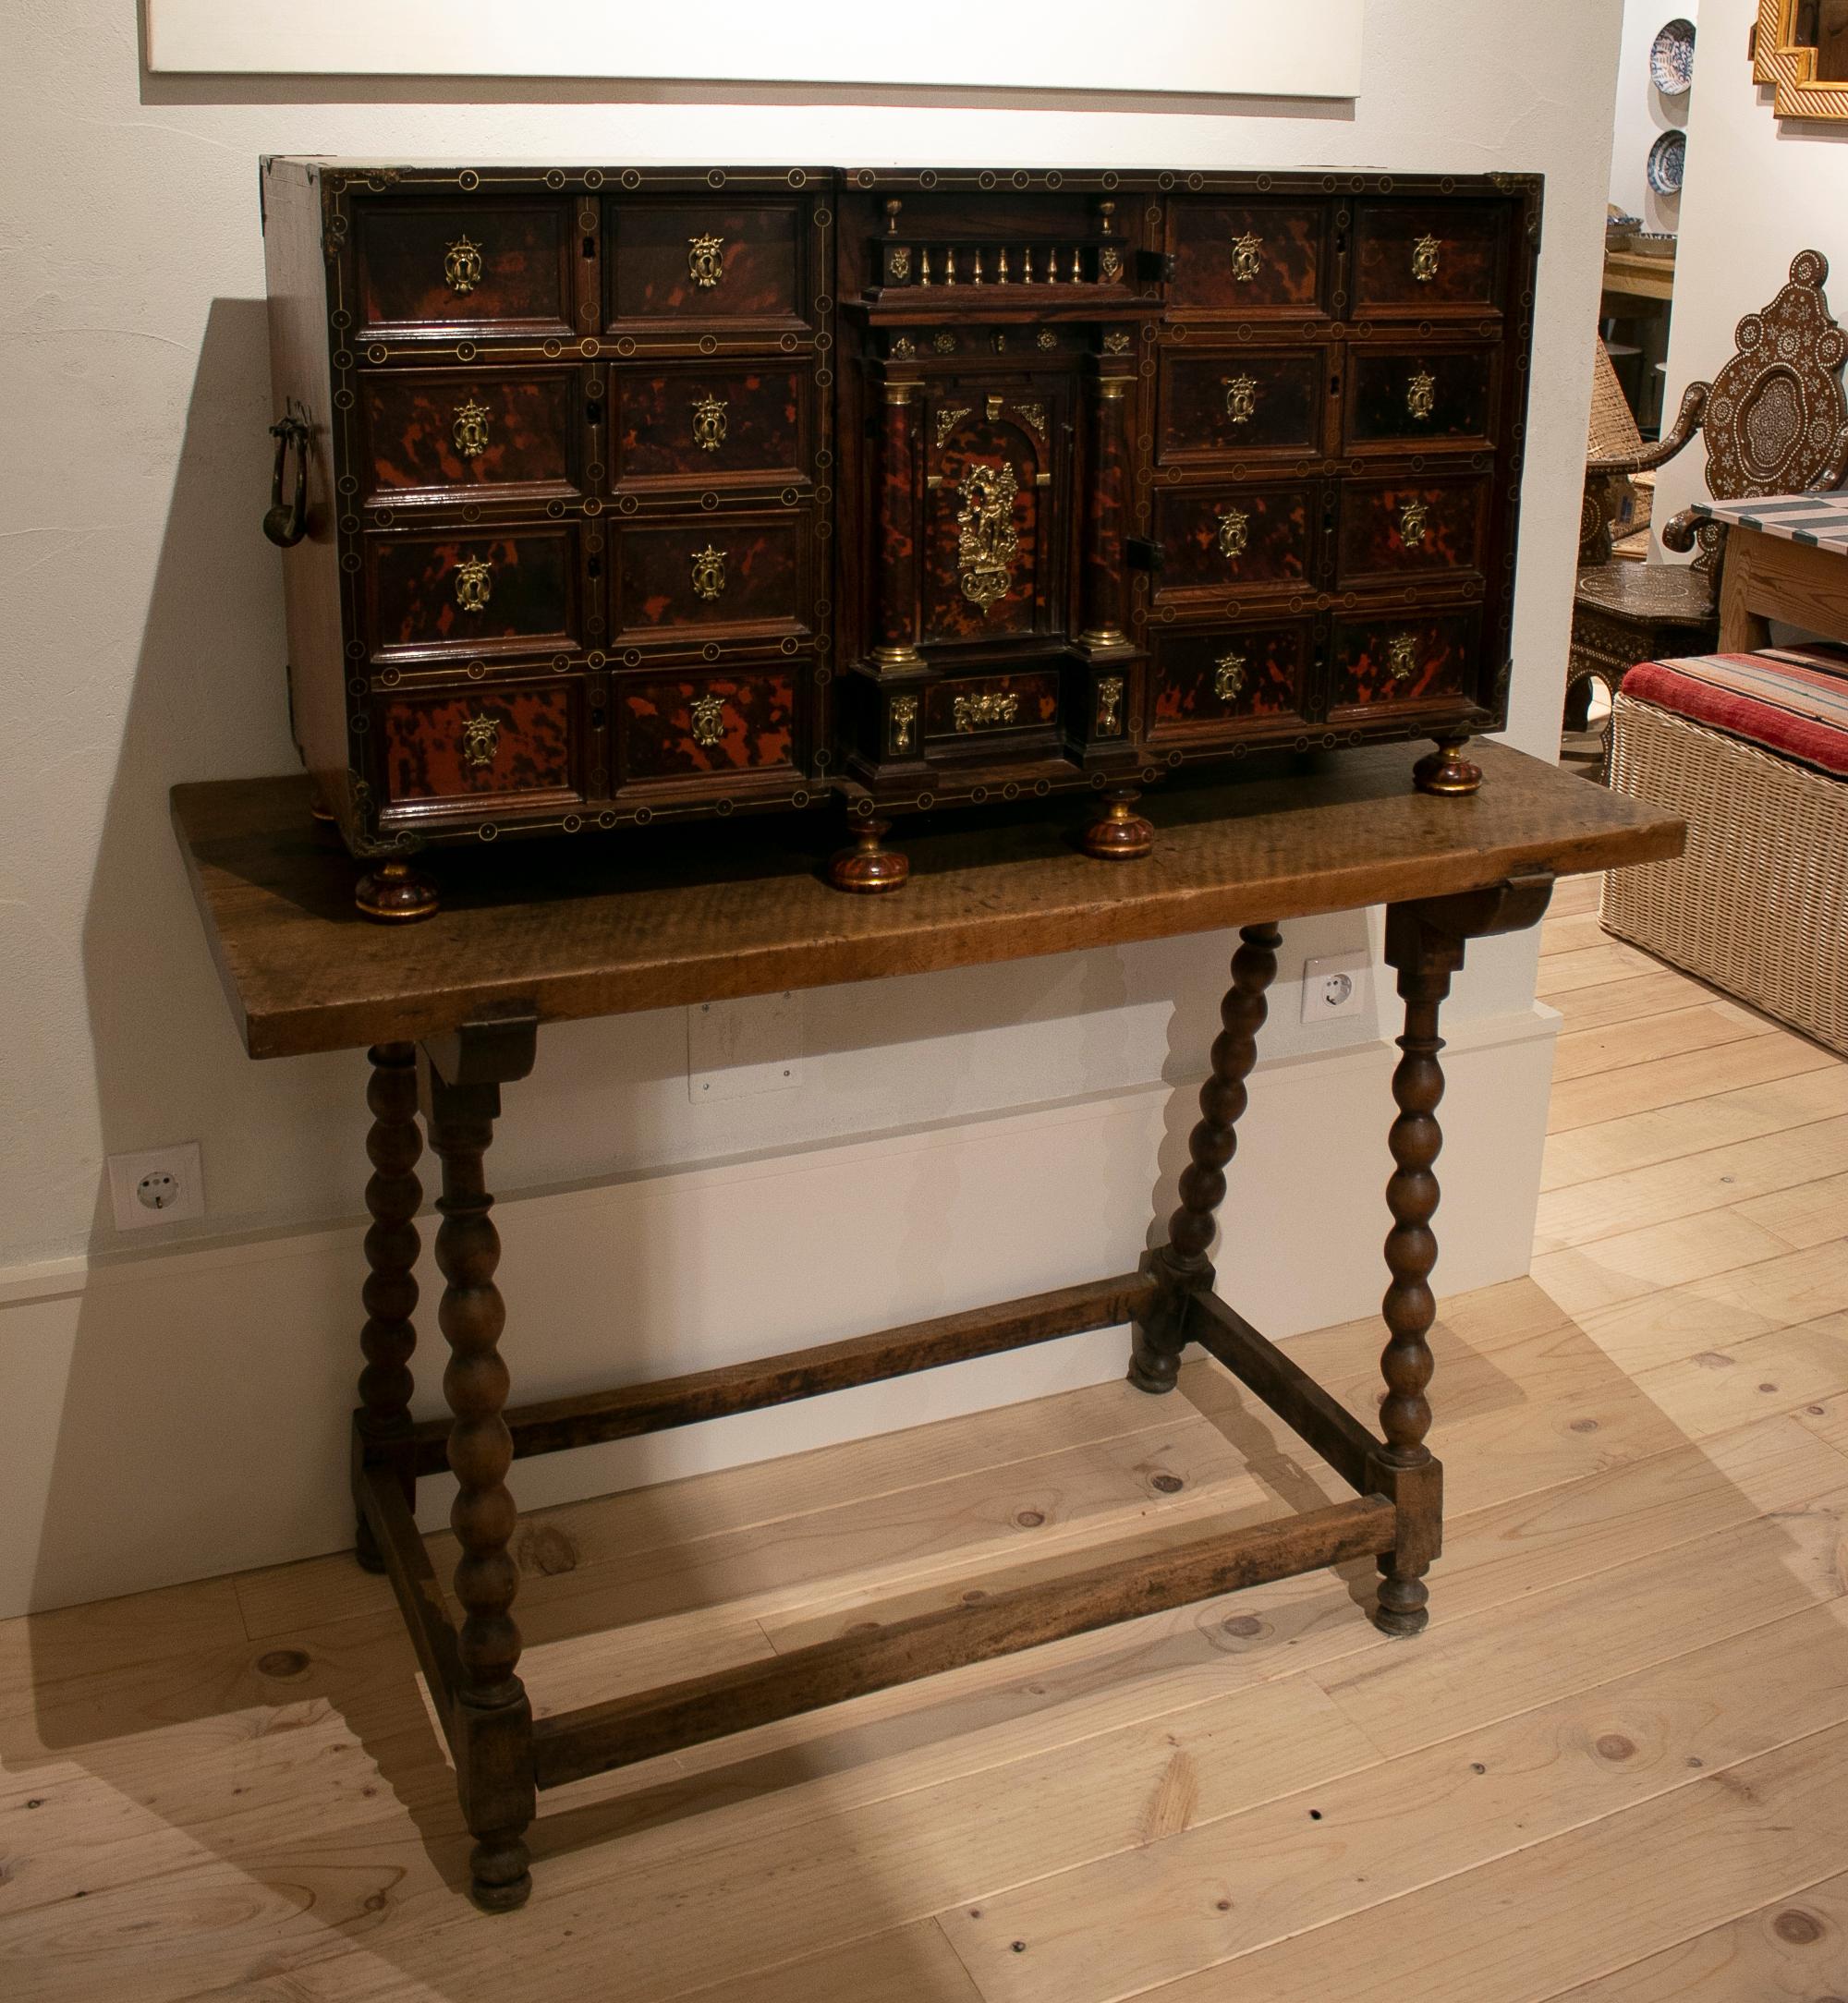 Spanischer Schreibtisch aus Holz und Schildpatt aus dem 17. Jahrhundert mit Schubladen und Taquillón, dem Untertisch, auf dem er steht.